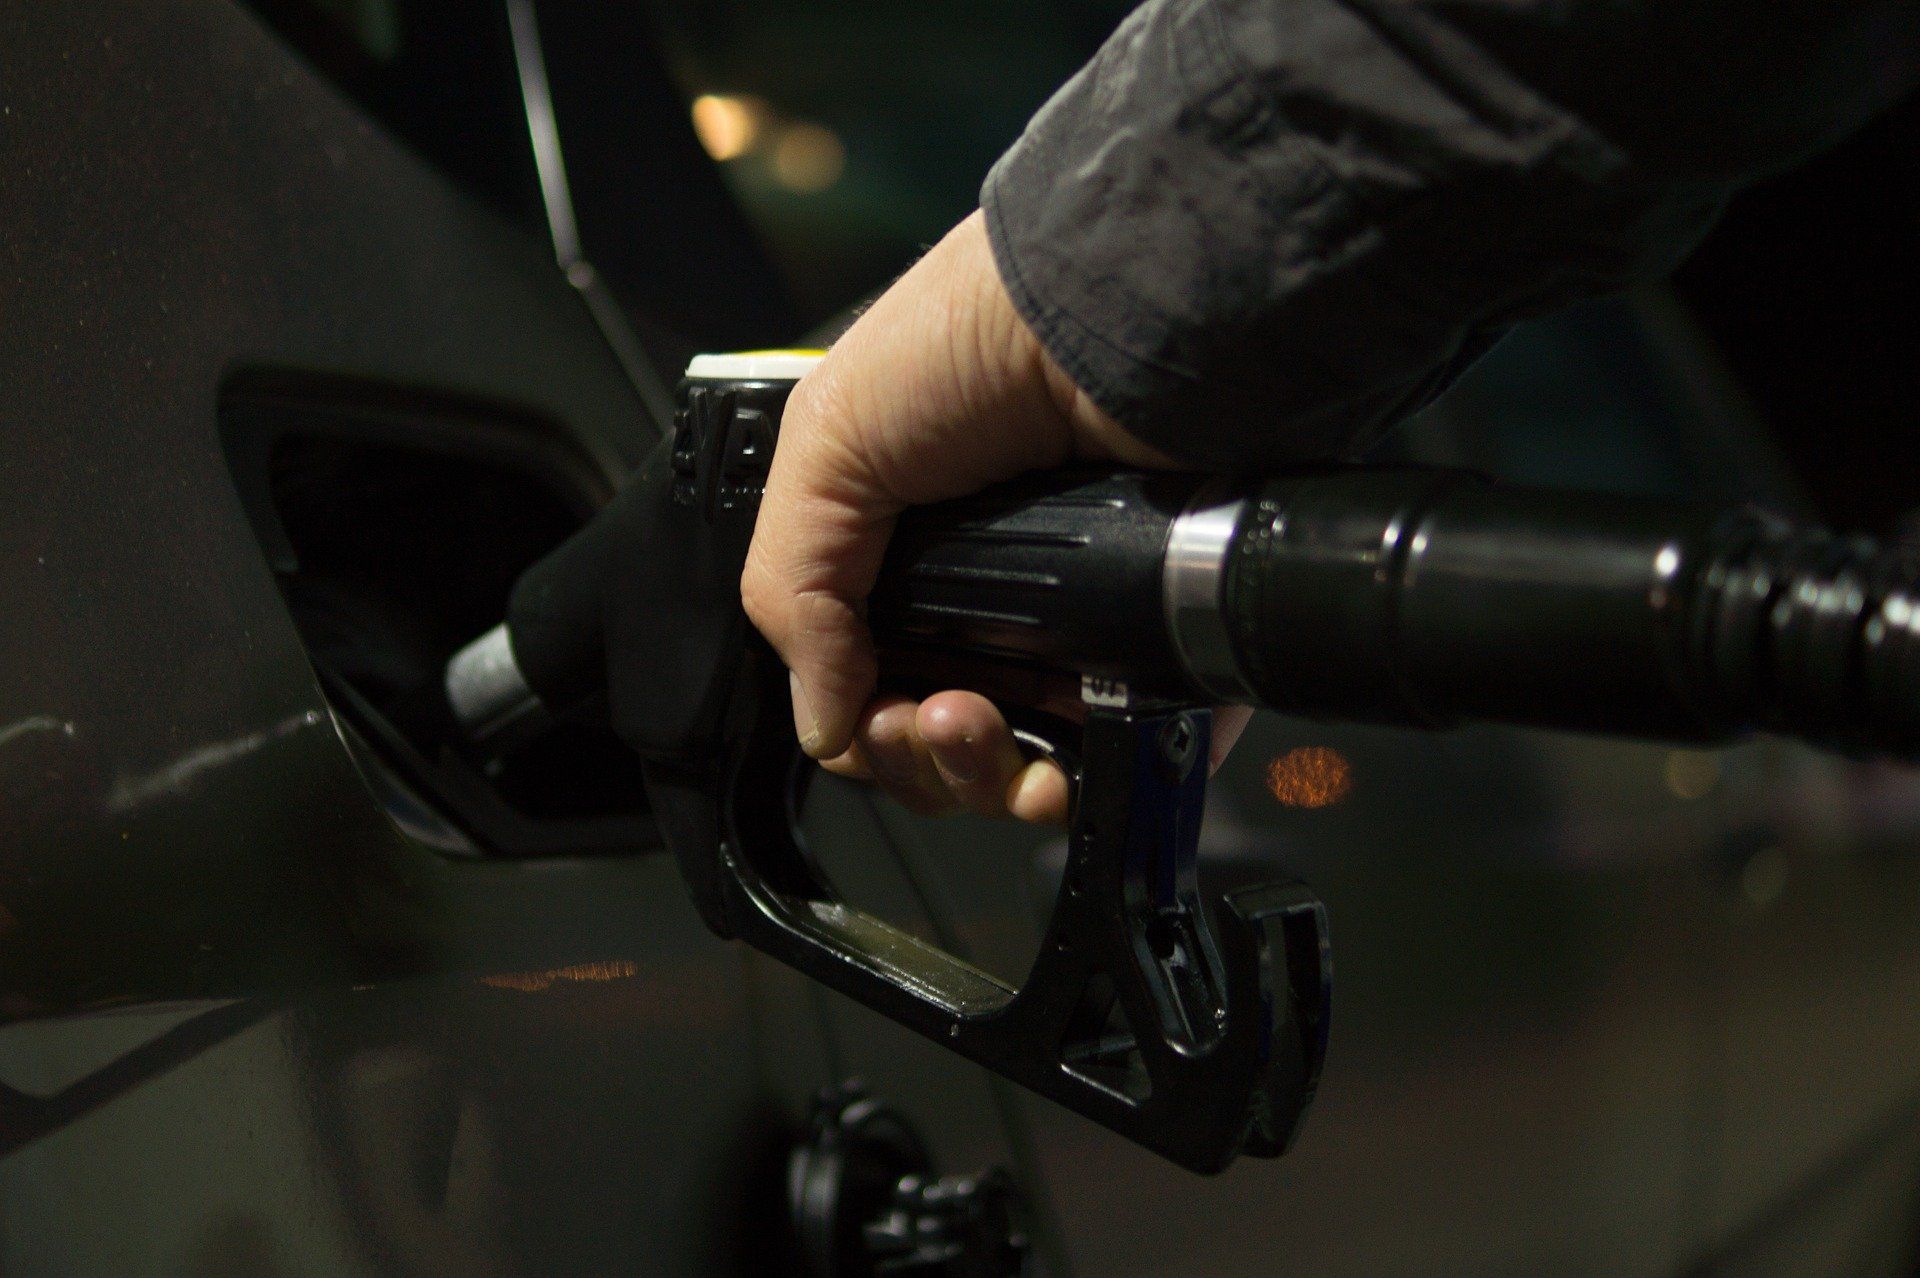 Fuel price July 18, 2022: Petrol Rs 105.31, diesel Rs 94.27 in Mumbai